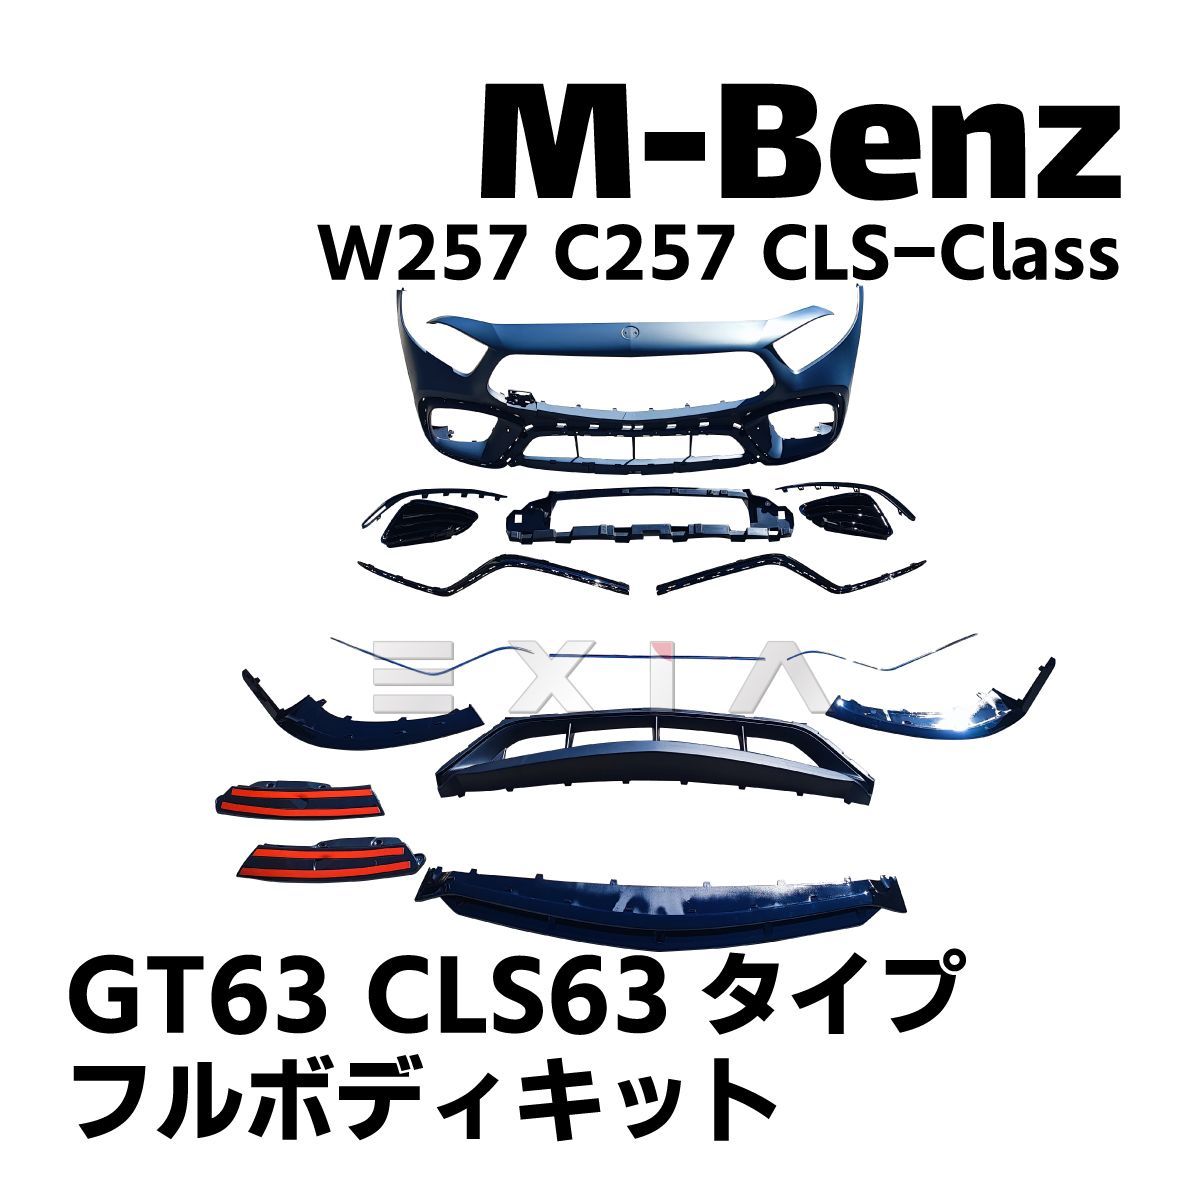 MercedesBenz メルセデスベンツ X257 C257 CLSクラス GT63 CLS63タイプ ボディキット バンパー グリル  ディフューザー マフラー AMG エアロ カスタム パーツ - メルカリ